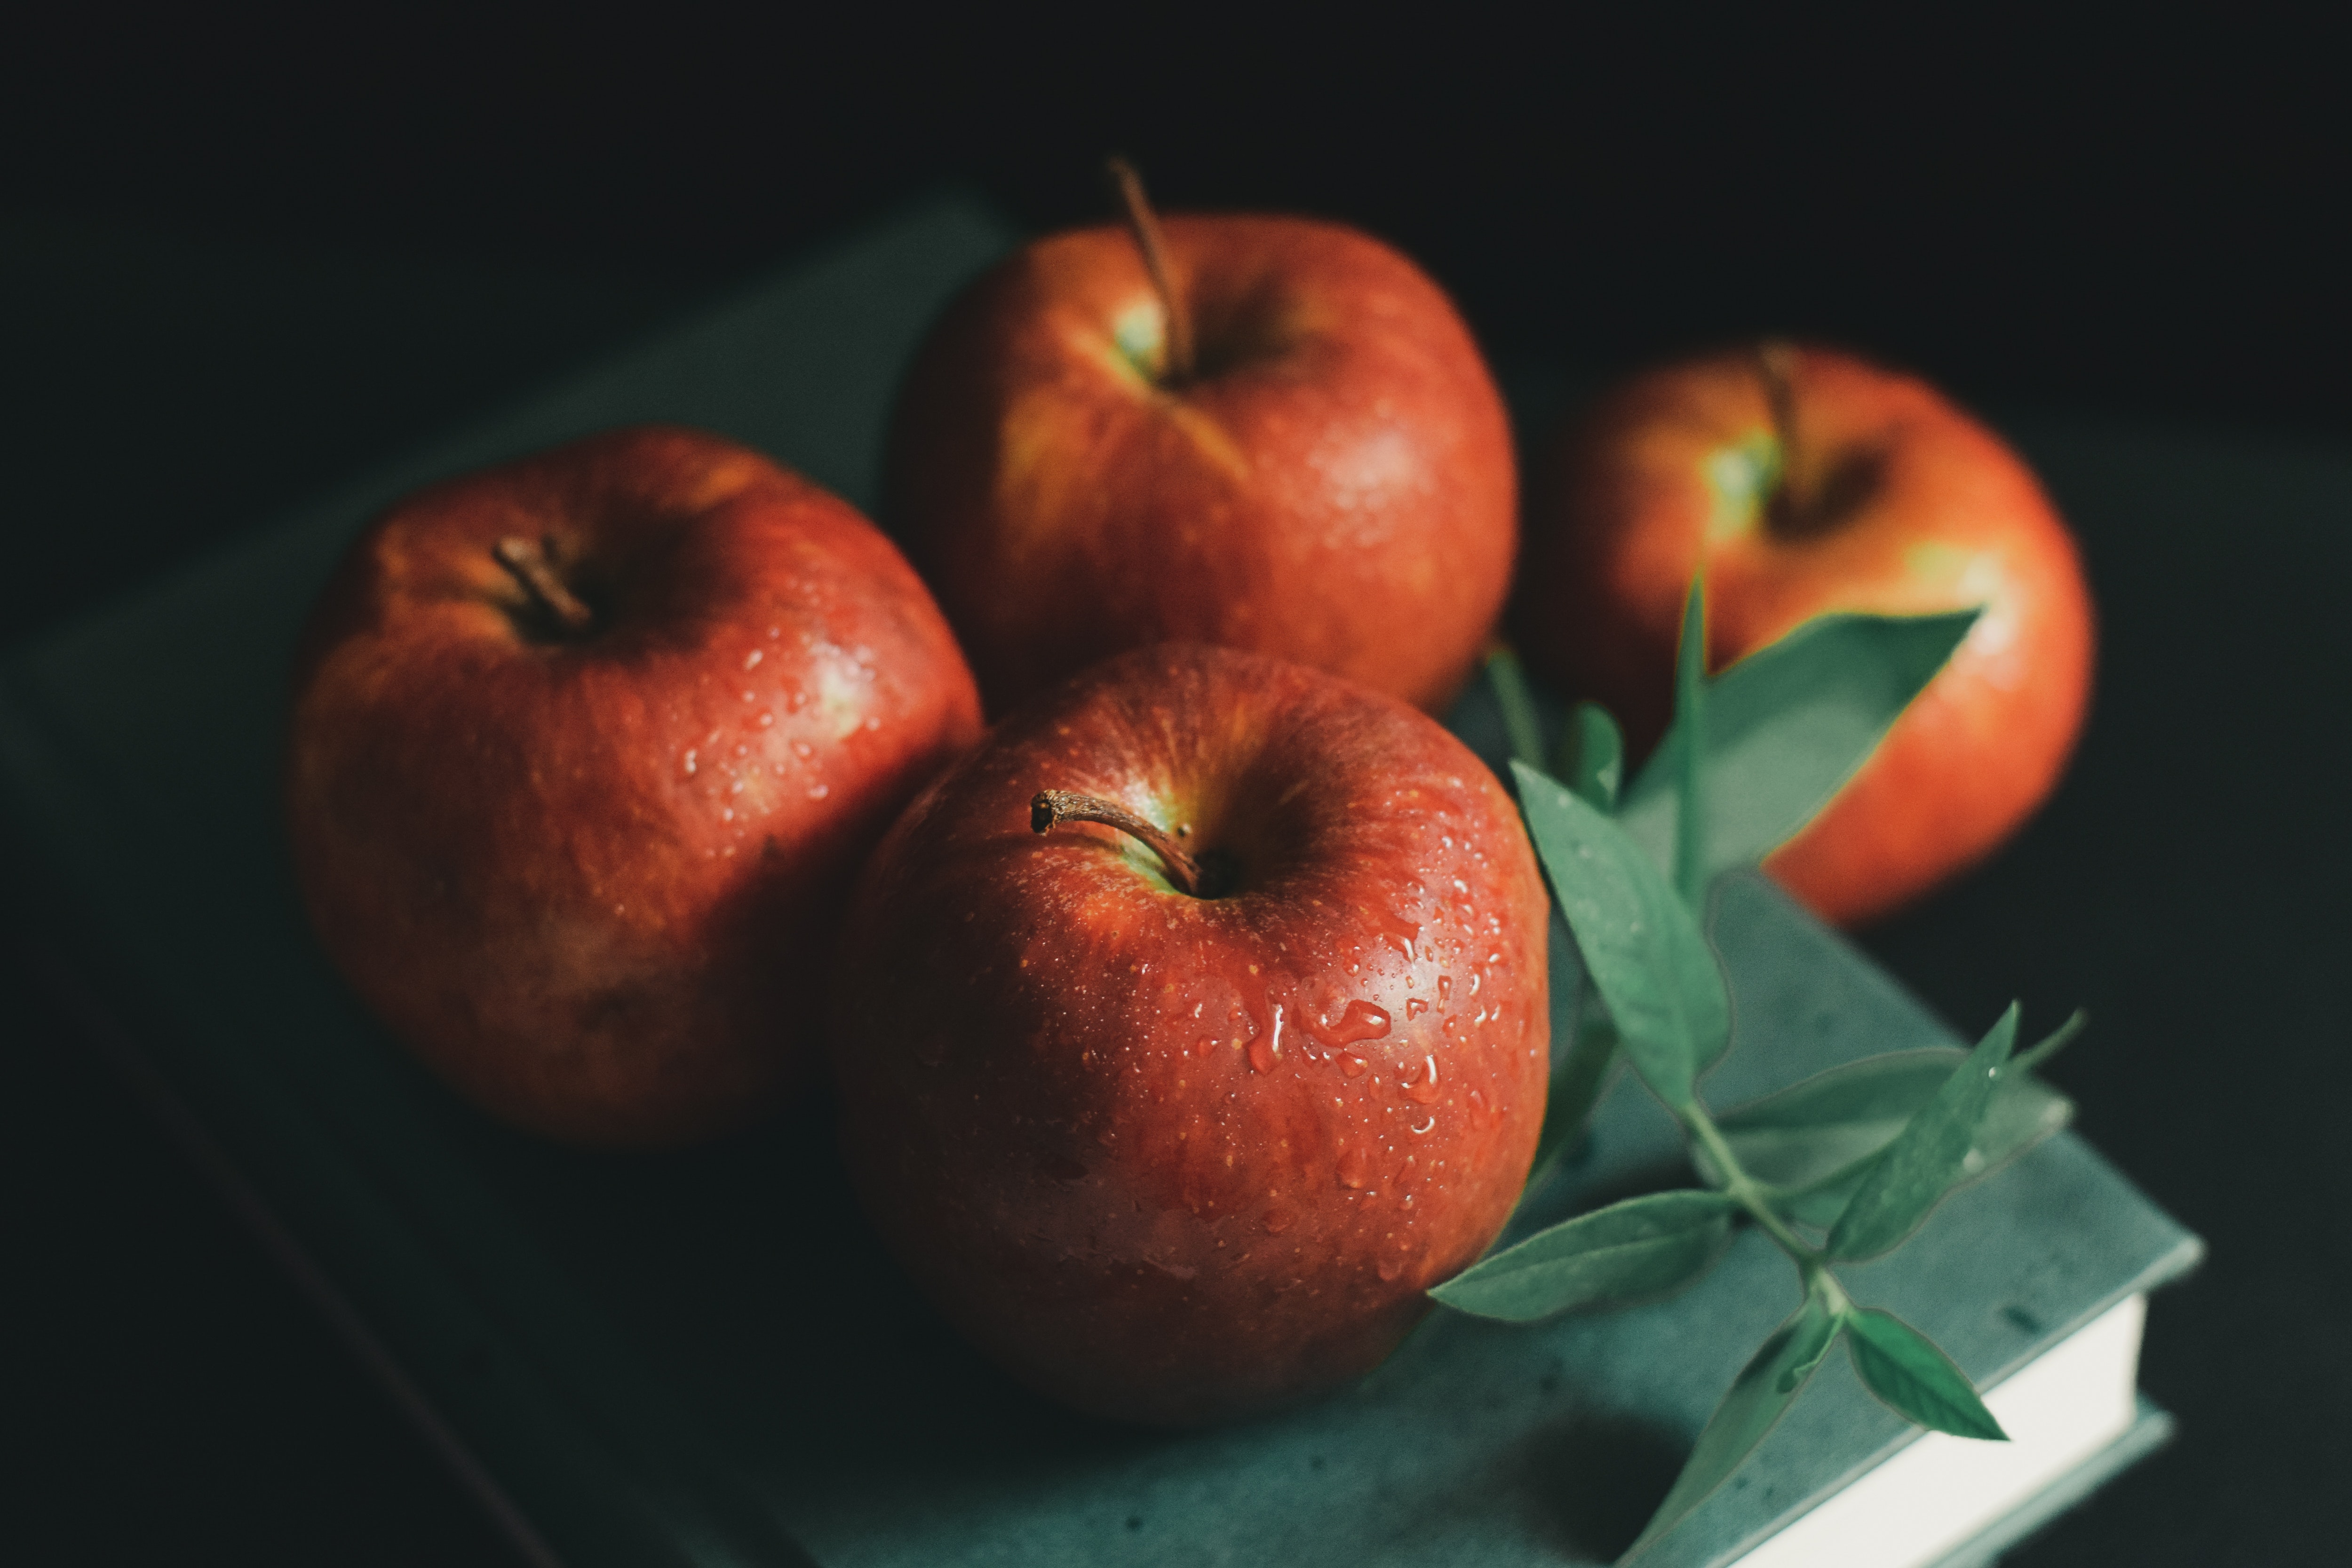 वजन कमी करणाऱ्या पदार्थांमध्ये सफरचंदाचा समावेश होतो.